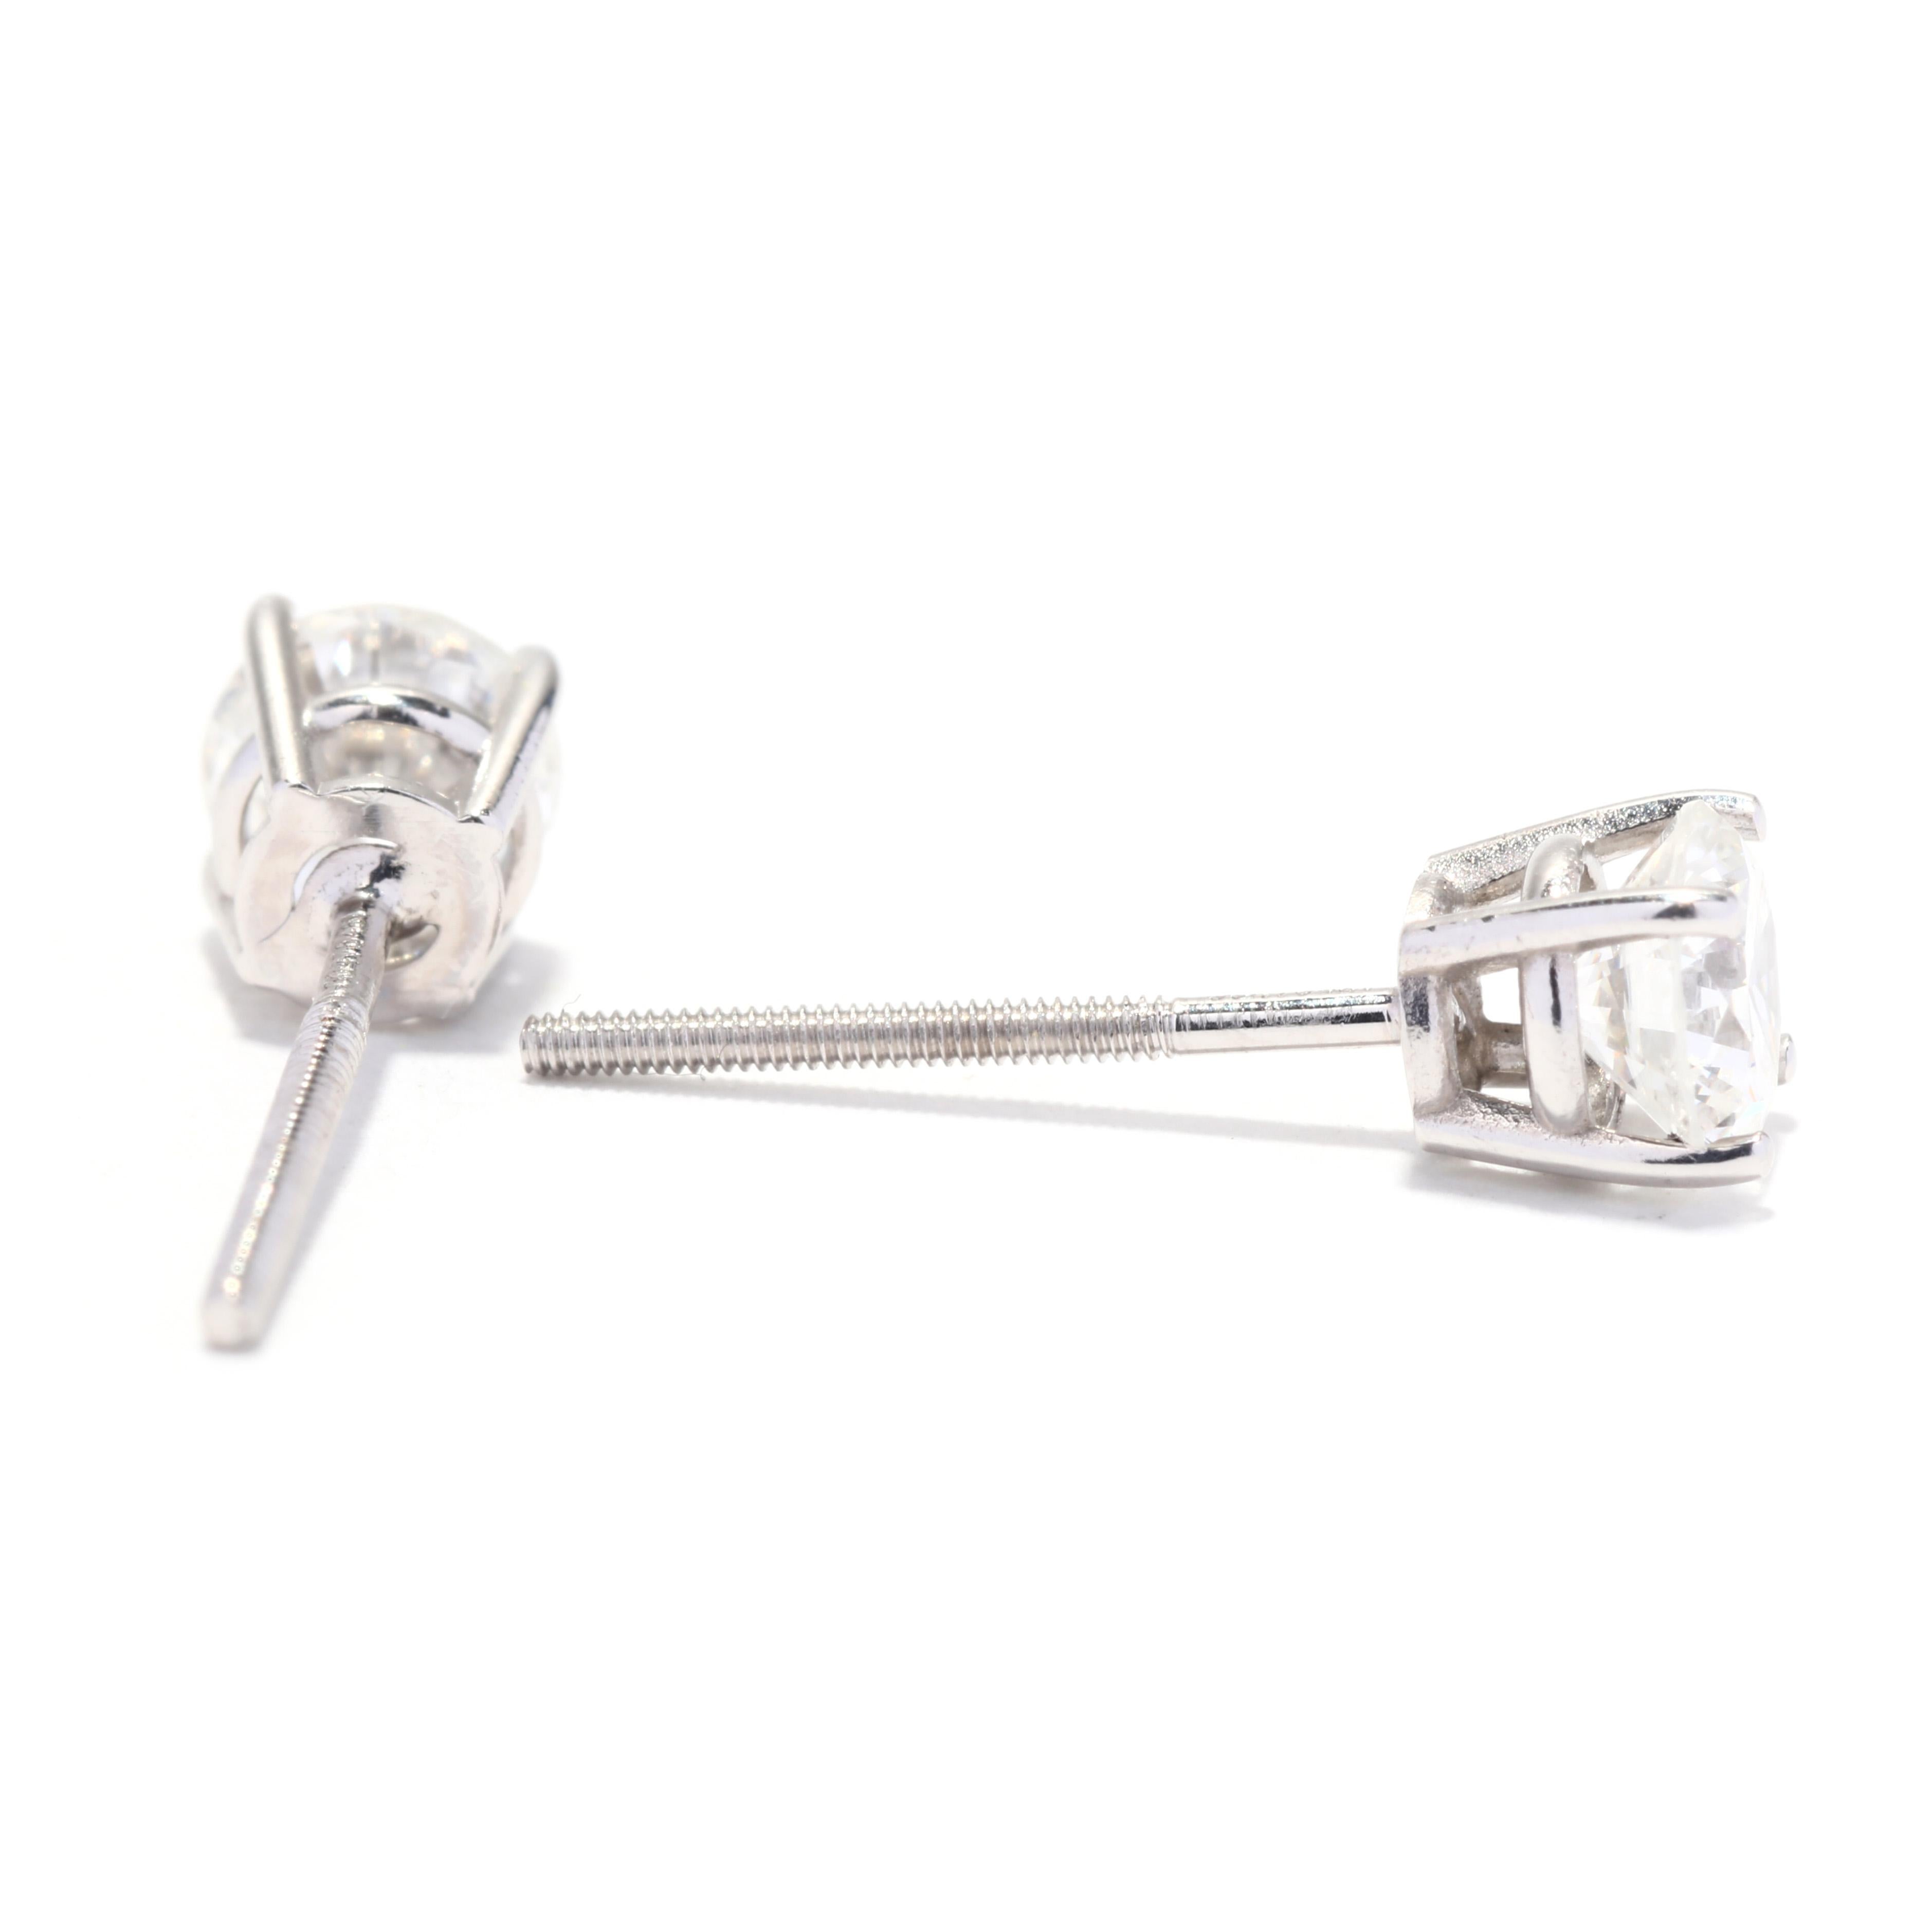 Ein Paar Diamanten-Ohrstecker aus Platin. Diese schlichten Diamant-Ohrstecker sind mit runden Diamanten im Brillantschliff mit einem Gesamtgewicht von ca. 0,75 Karat besetzt und haben durchbrochene Schraubverschlüsse.

Steine:
- Diamanten, 2